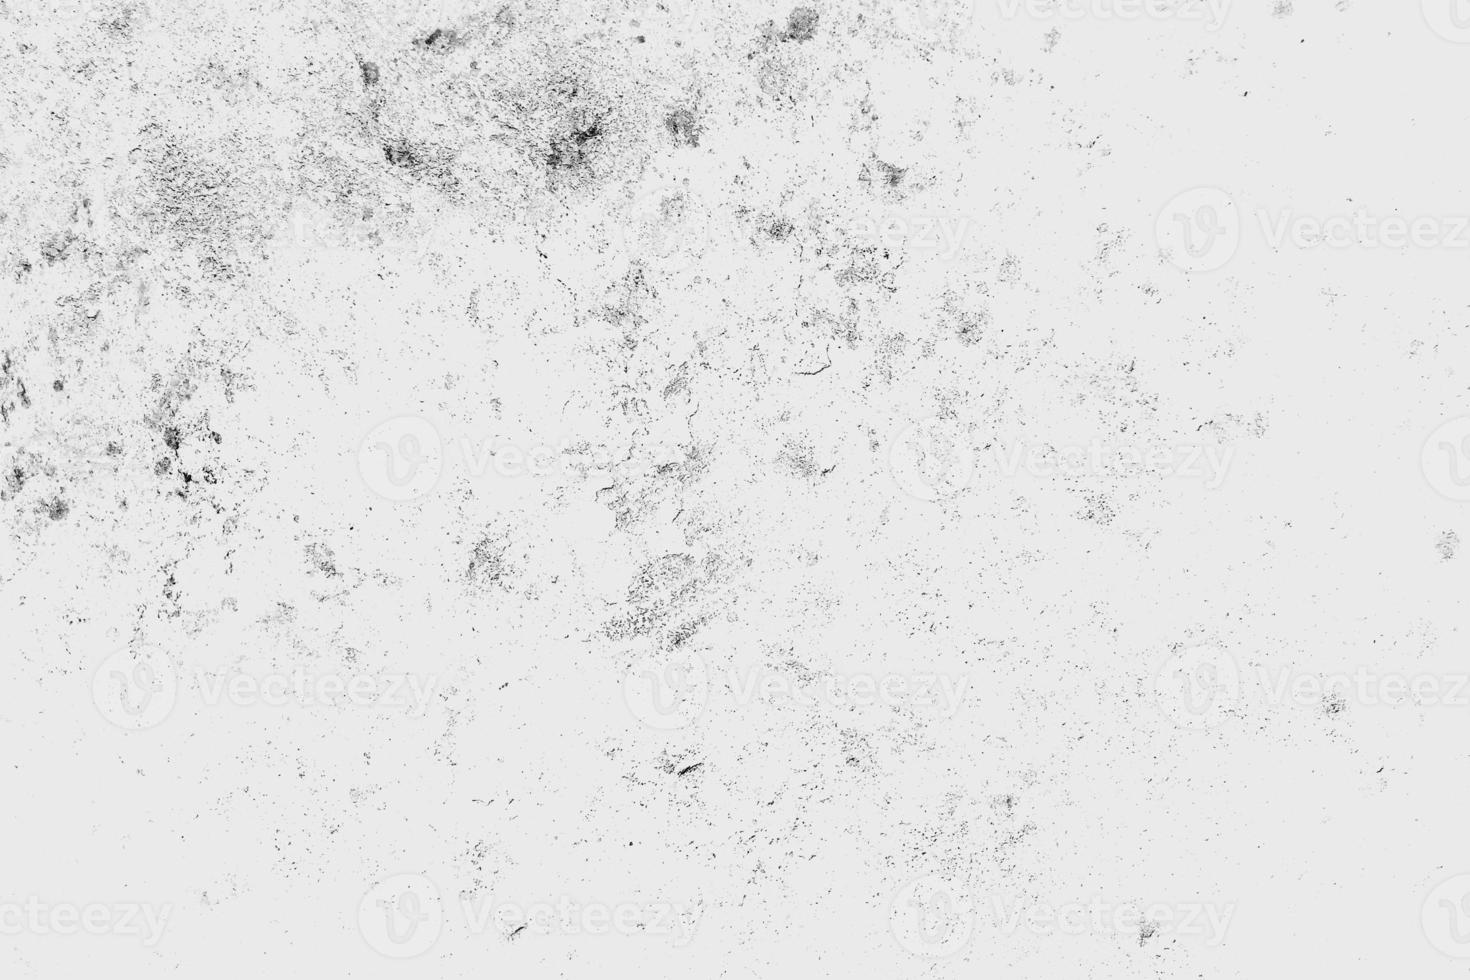 täcka över bedrövad grunge smuts ljud textur bakgrund foto